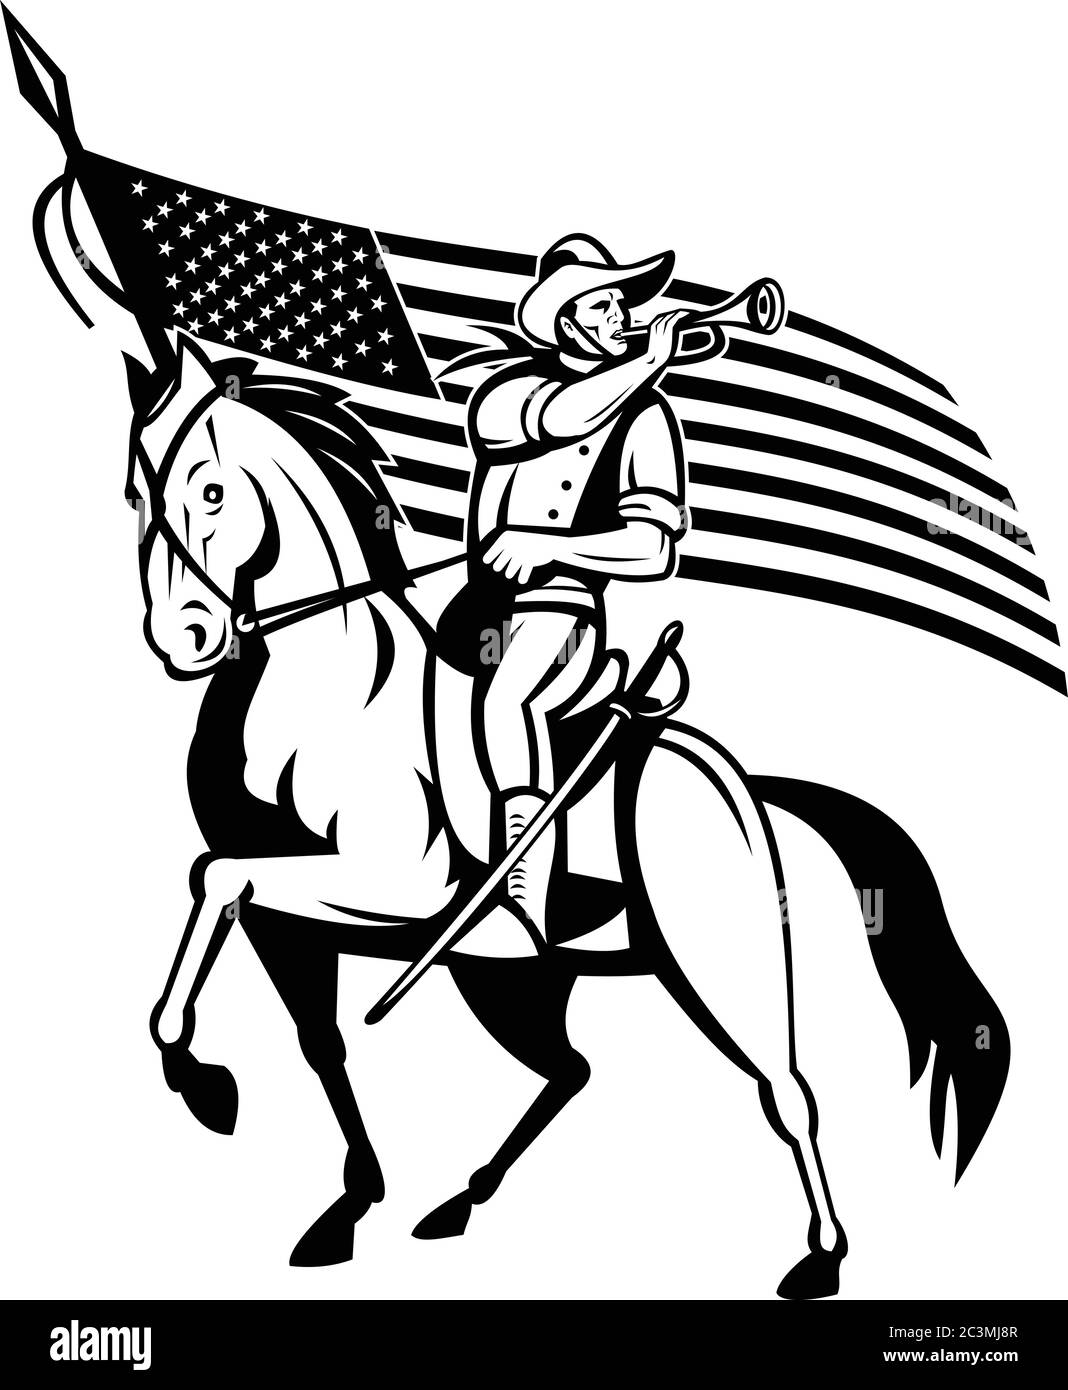 Illustrazione in stile retrò di una cavalleria degli Stati Uniti, la forza montata degli Stati Uniti d'America con le stelle e le strisce americane di bugle e degli Stati Uniti d'America Illustrazione Vettoriale